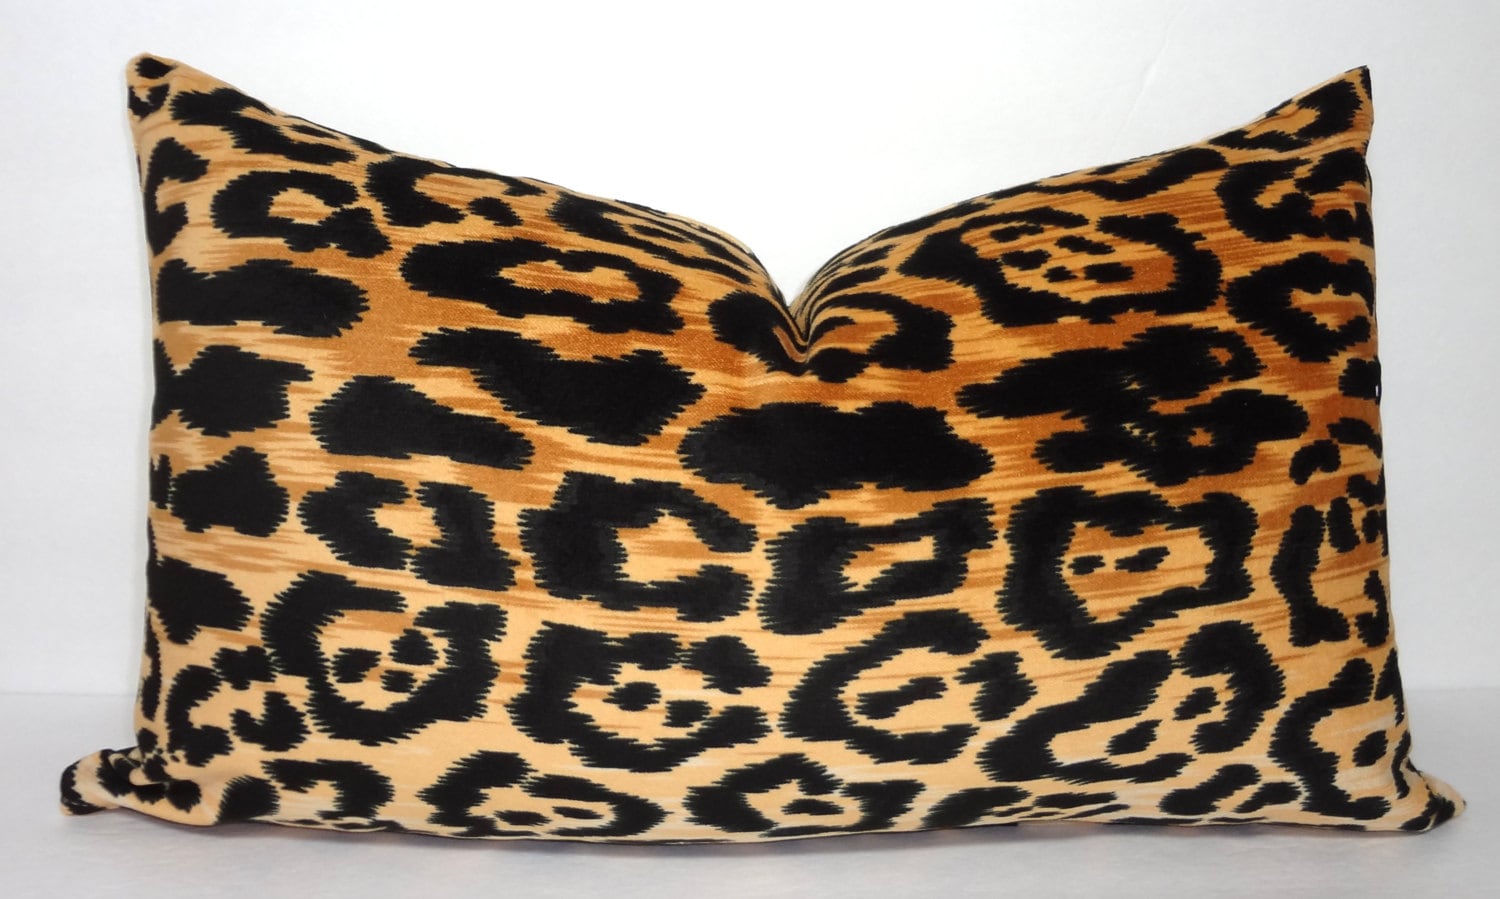 Braemore Jamil Animal Print Cushion Cover Velvet Leopard Zipper PILLOW COVER